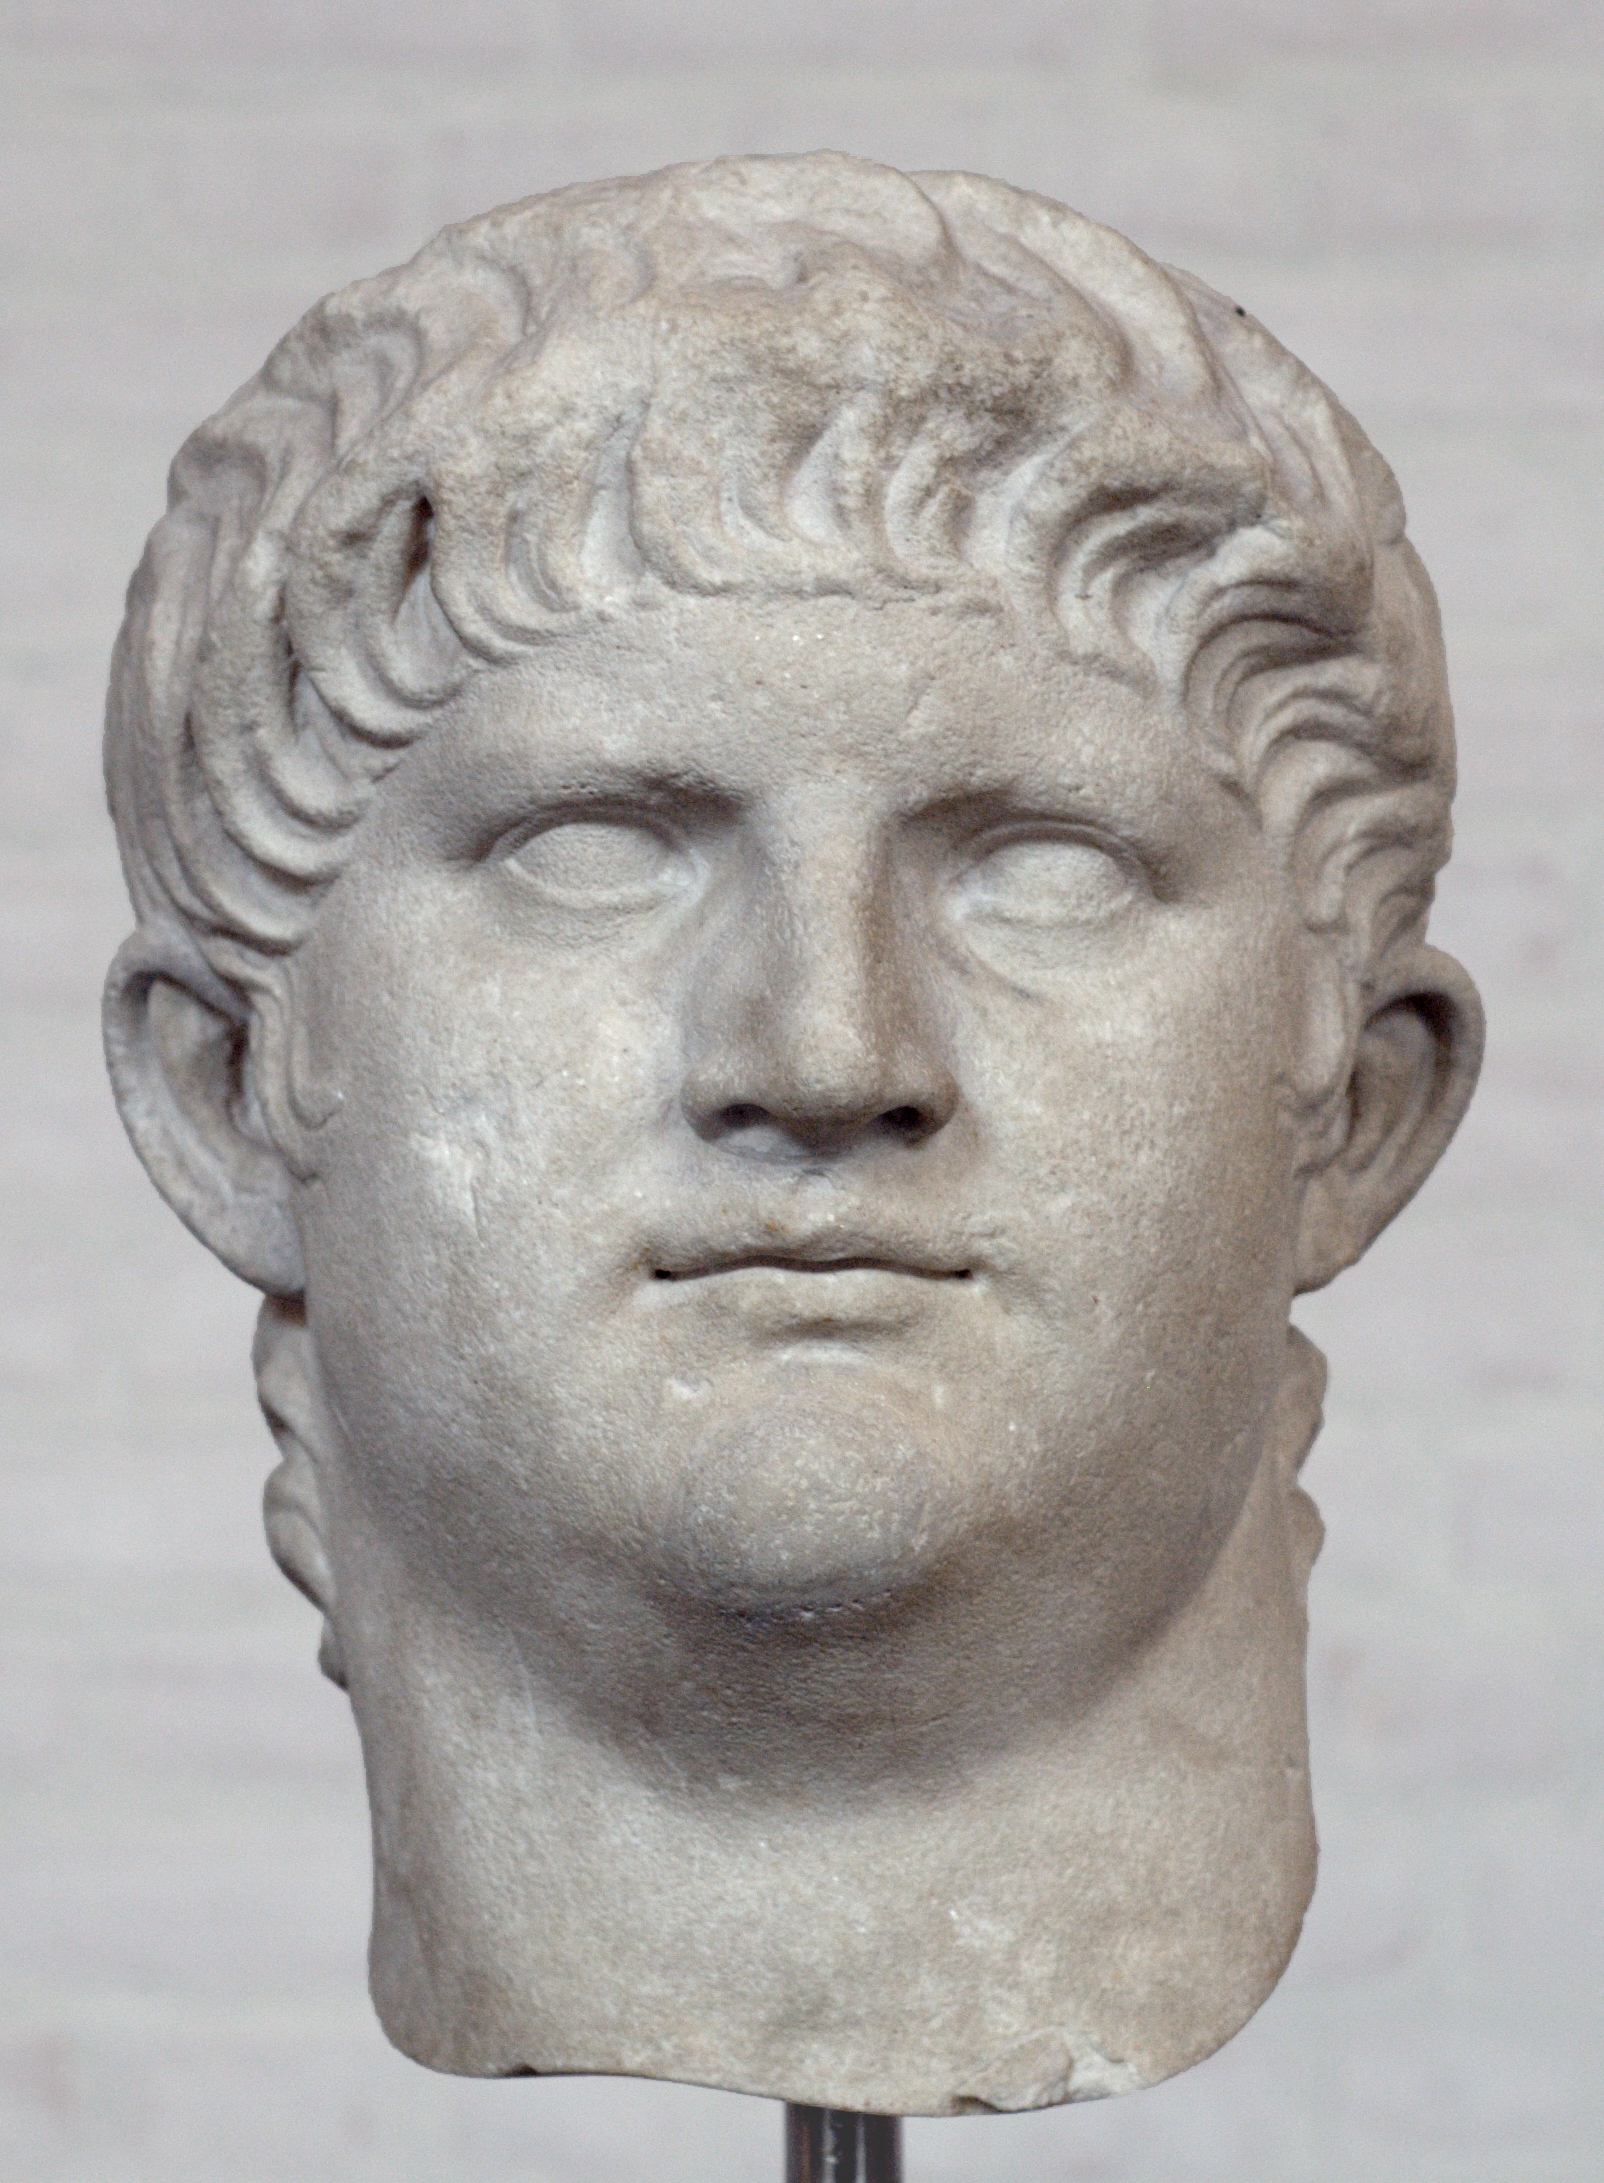 Nero császár portréja (fotó: Wikipedia)